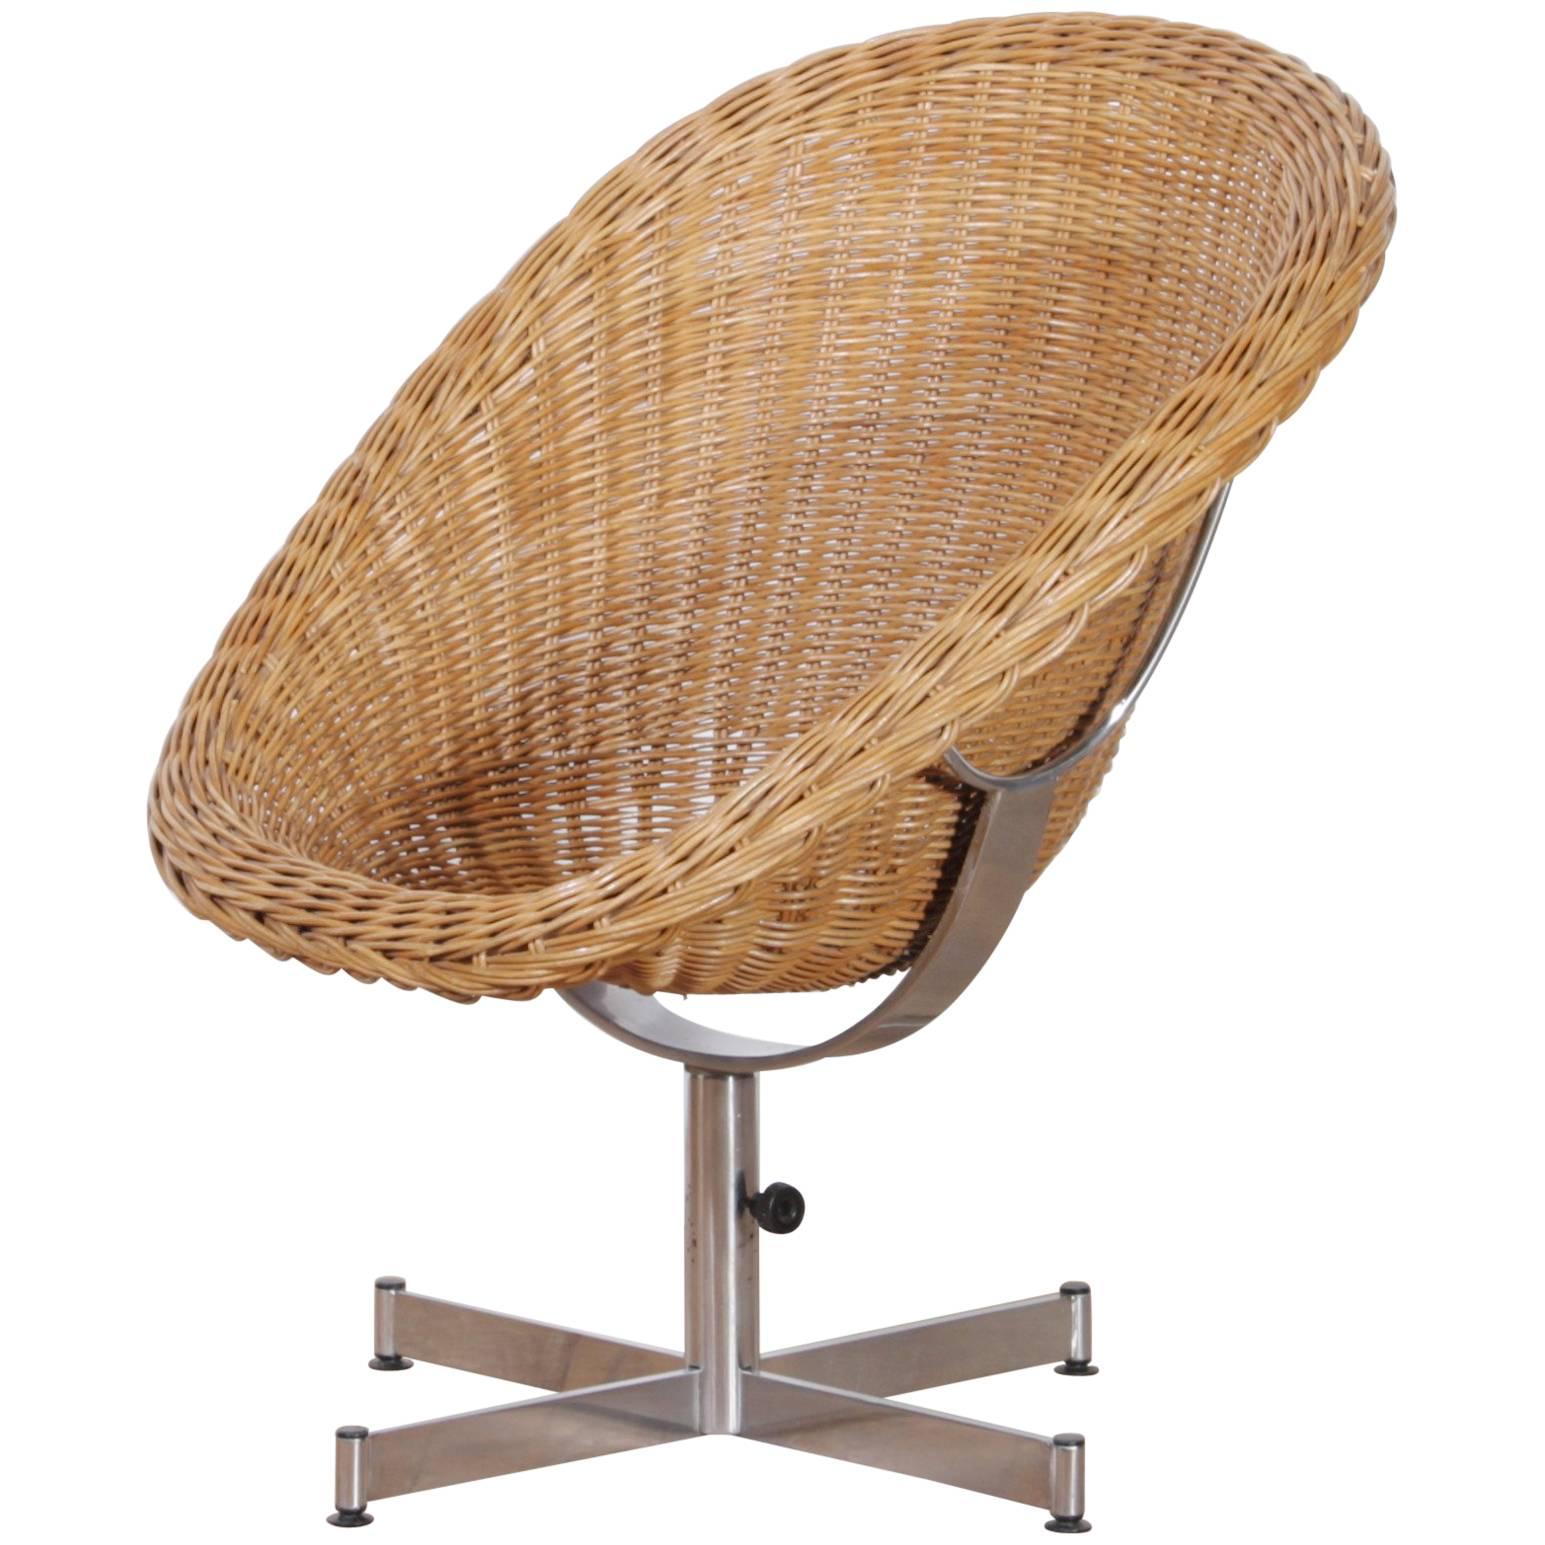 1960s, Rattan Swivel Chair by Dirk Van Sliedregt for Gebroeders Jonkers